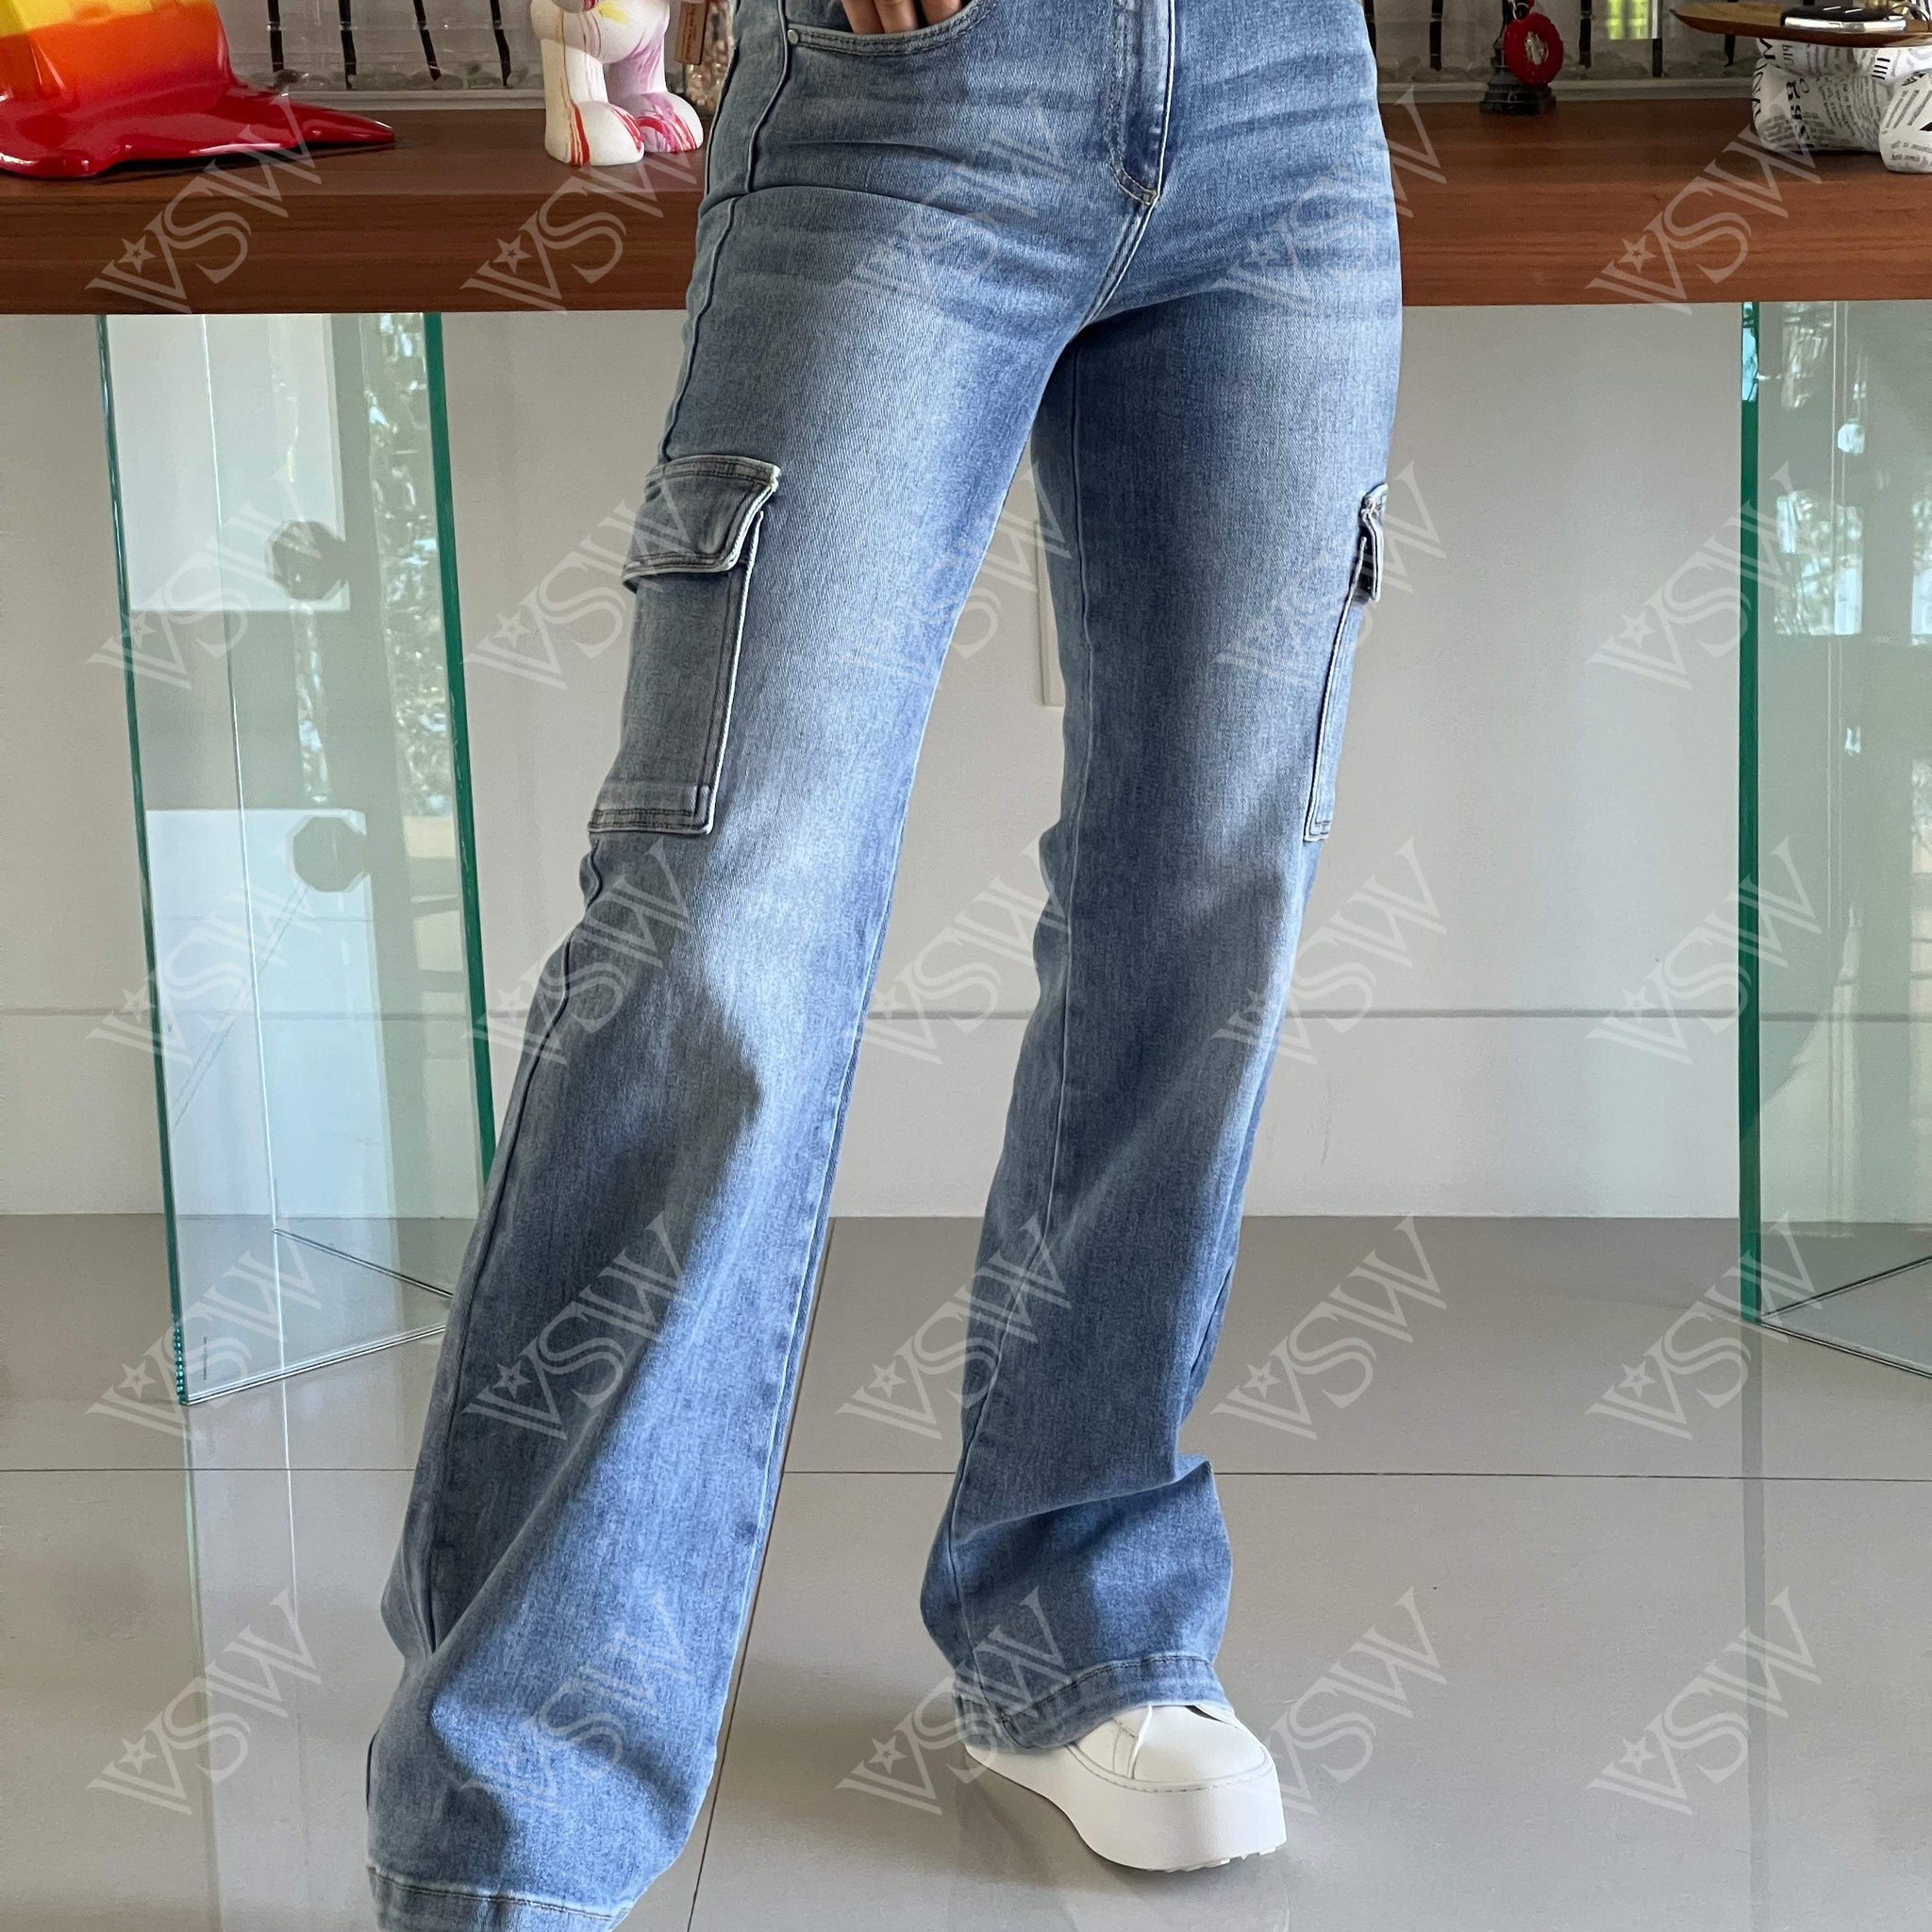 Jeans Jeanne - Jeans from [store] by LA - women jeans